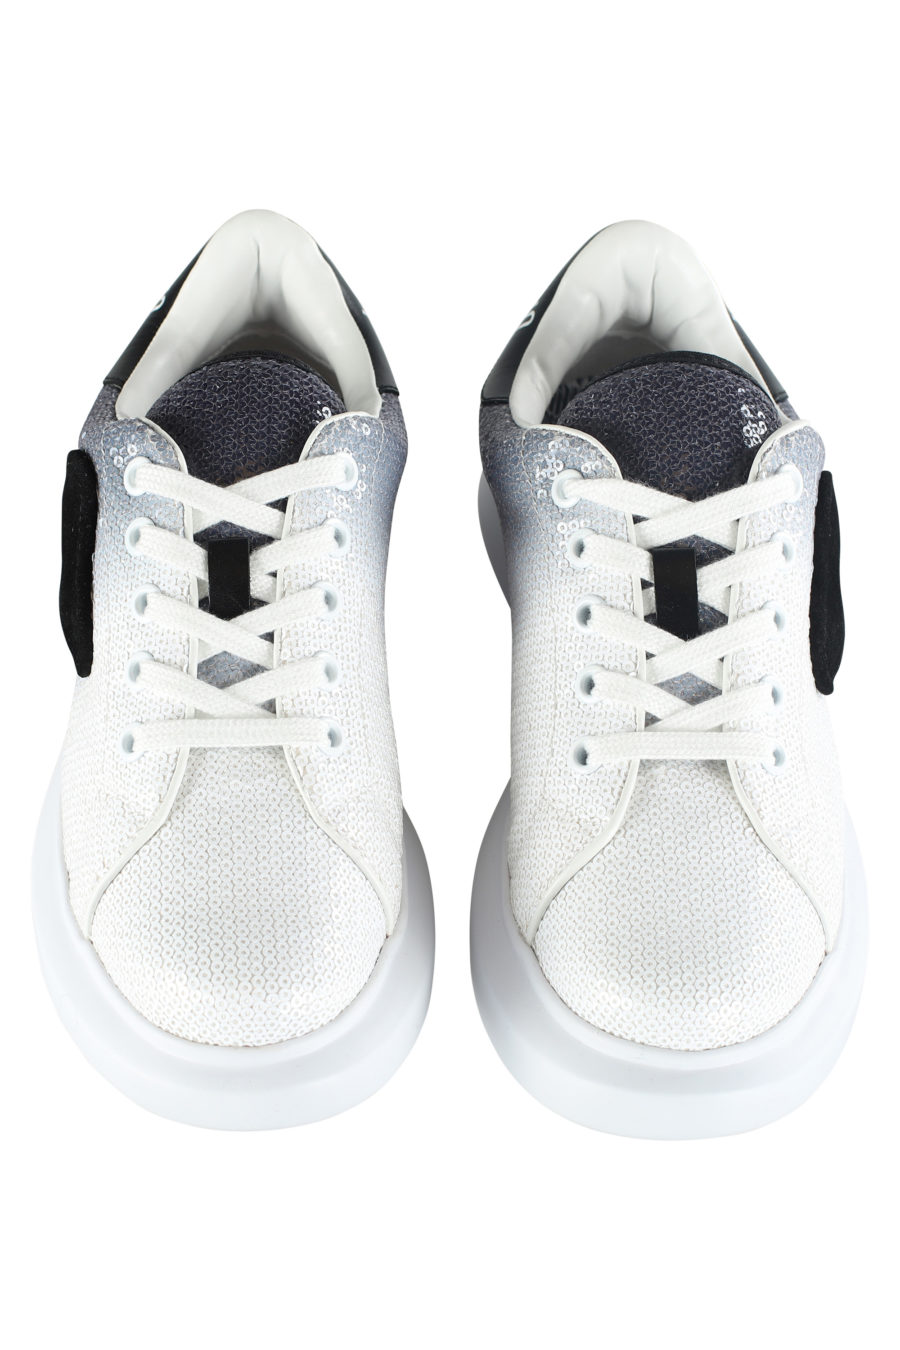 Zapatillas blancas con degrade negro y lentejuelas - IMG 5341